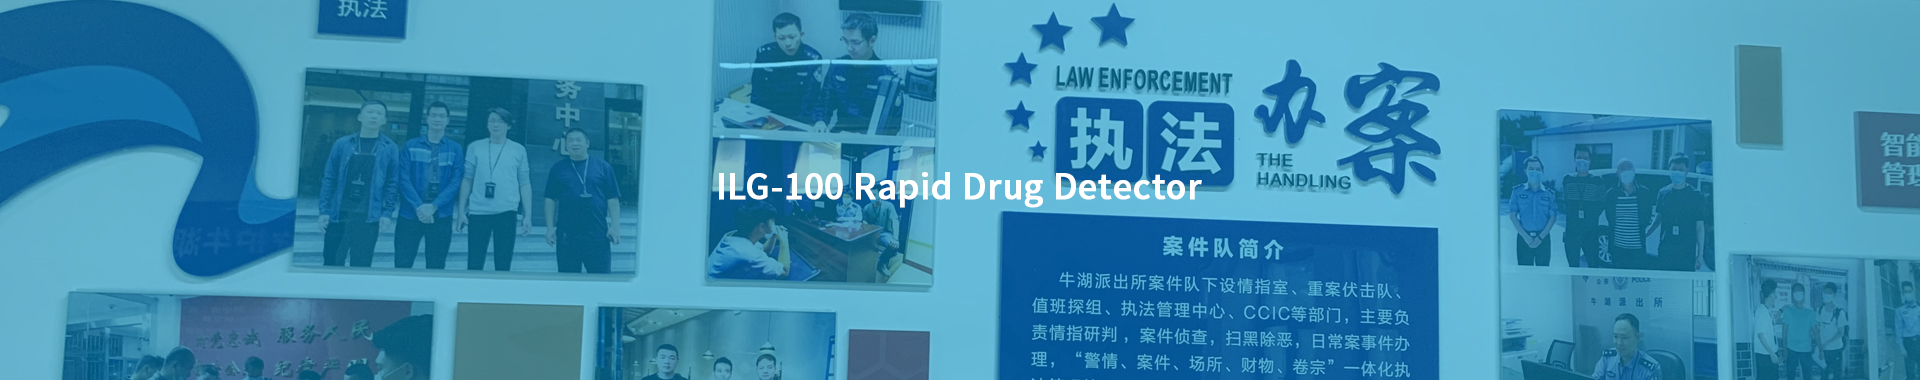 Product—ILG-100 Rapid Drug Detector